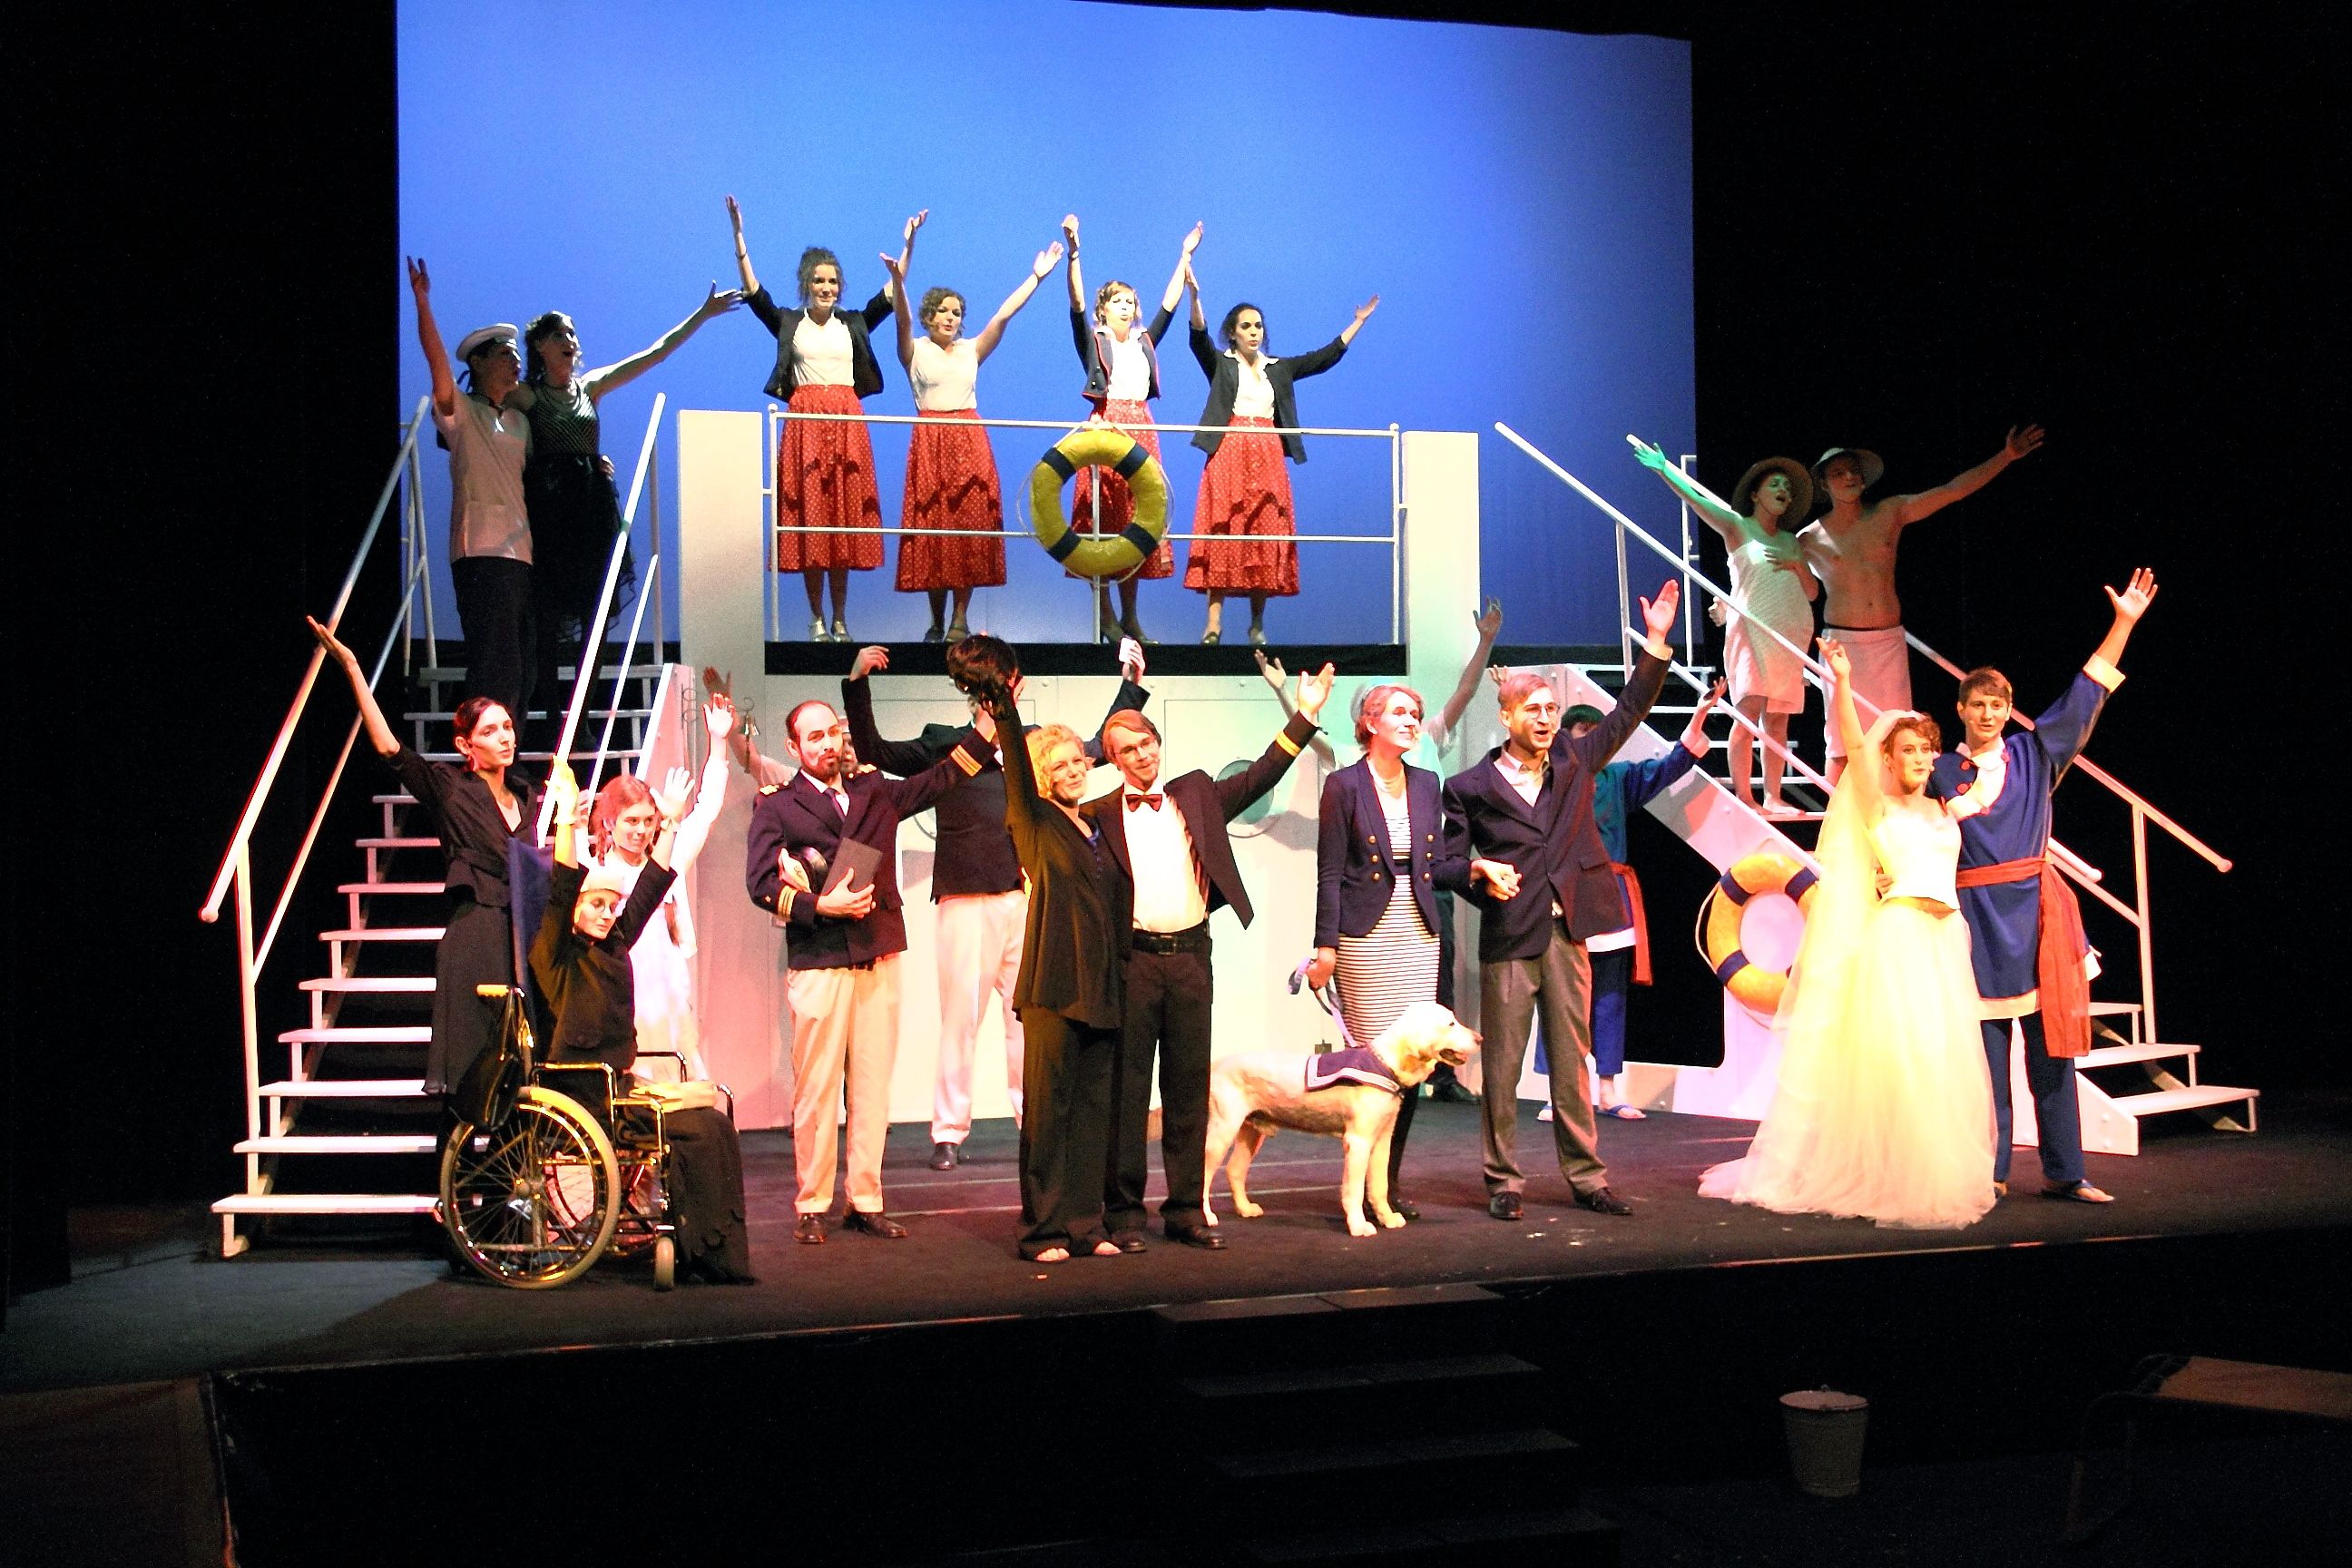 Ein Gruppenfoto einer Musical-Aufführung: alle Schauspieler stehen auf der Bühne und heben ihre Hände in der Luft. Auch ein Hund ist dabei.